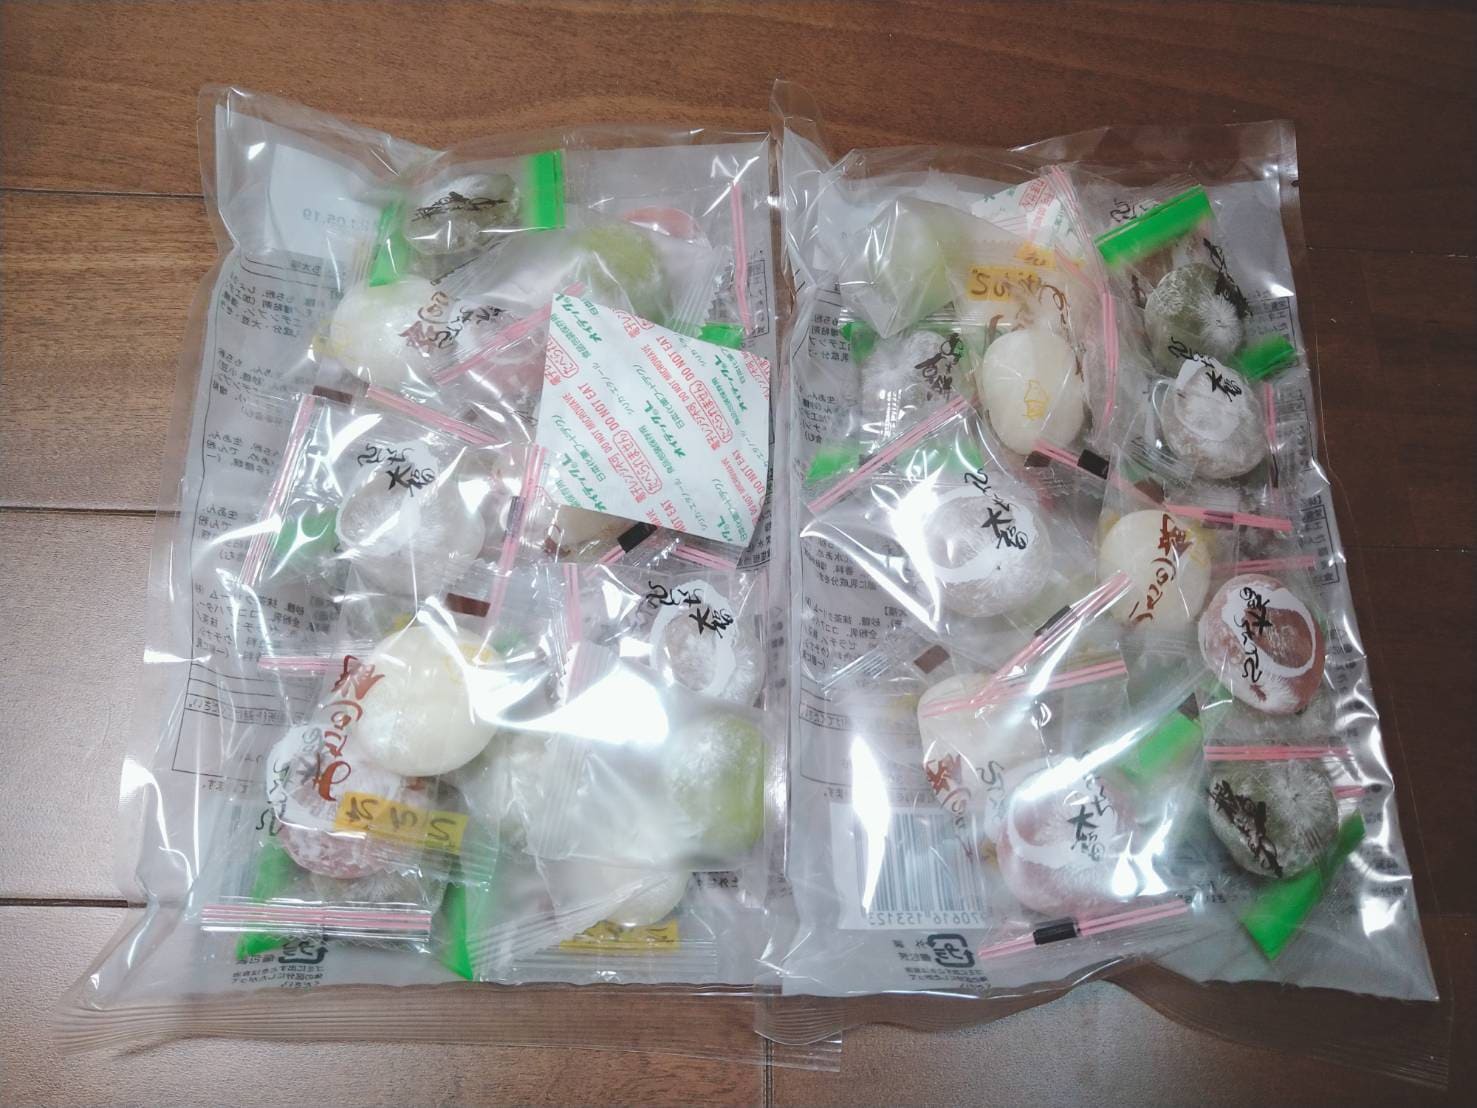 ベルーナ株主優待で届いたお菓子の写真